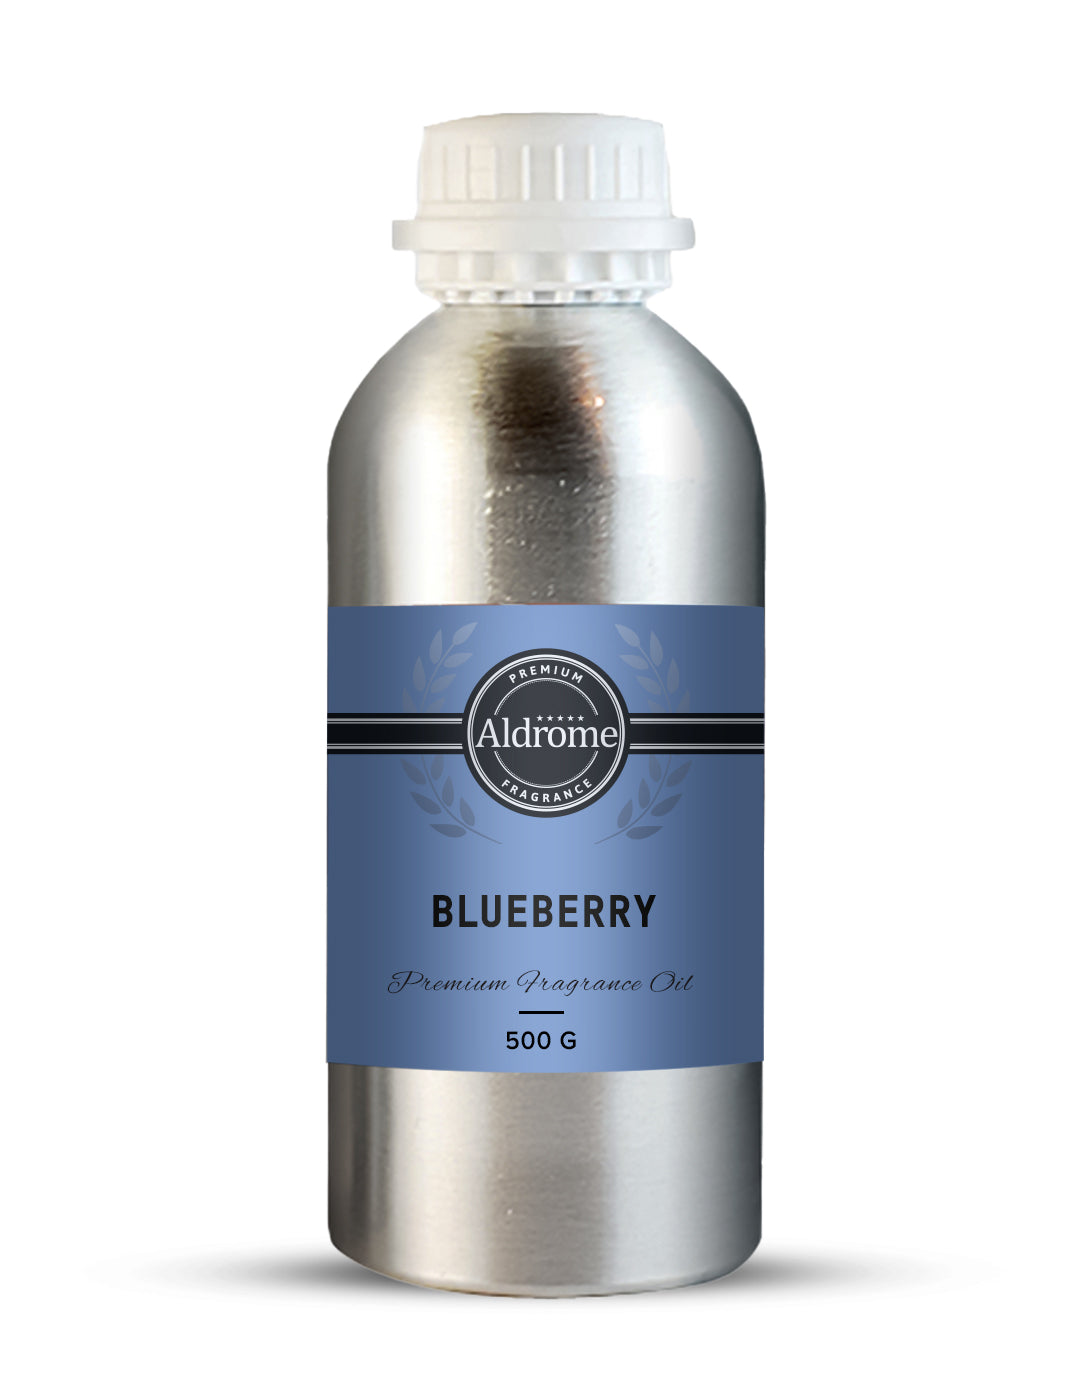 Blueberry Fragrance Oil - 500 G | Buy Blueberry  Fragrance Oil | Aldrome Premium Fragrance Oil